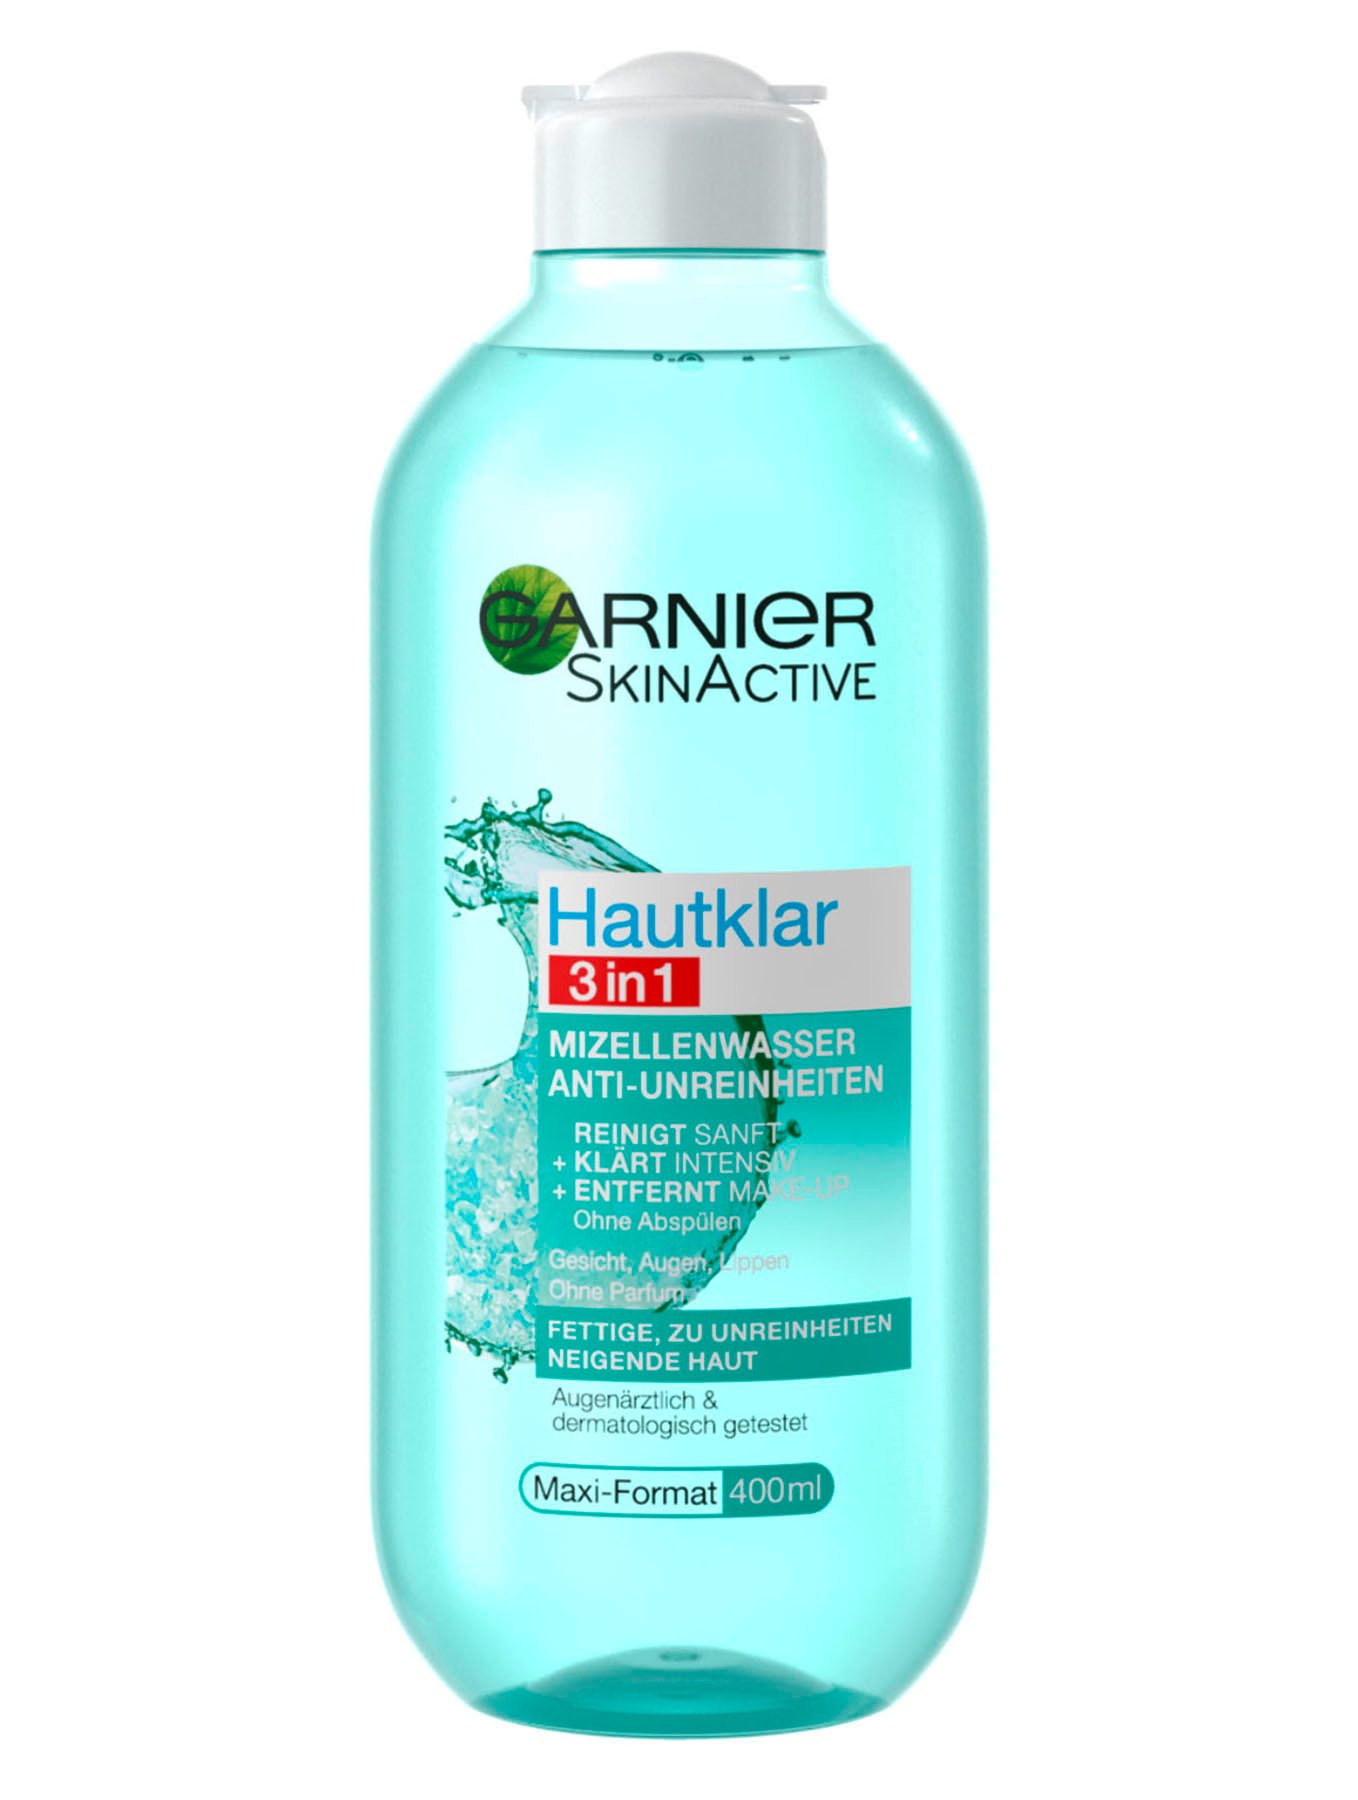 Hautklar 3in1 Mizellenwasser Anti-Unreinheiten | Garnier